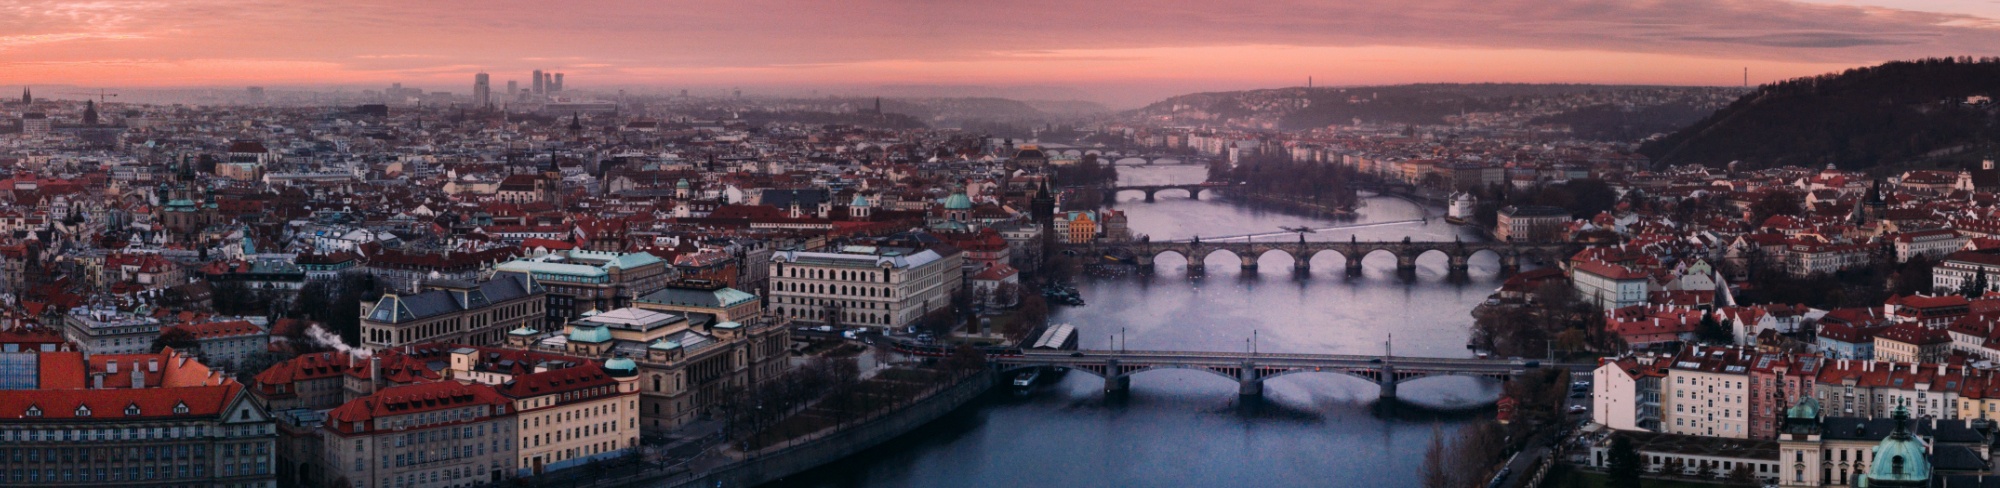 Prague Slide 4.jpg